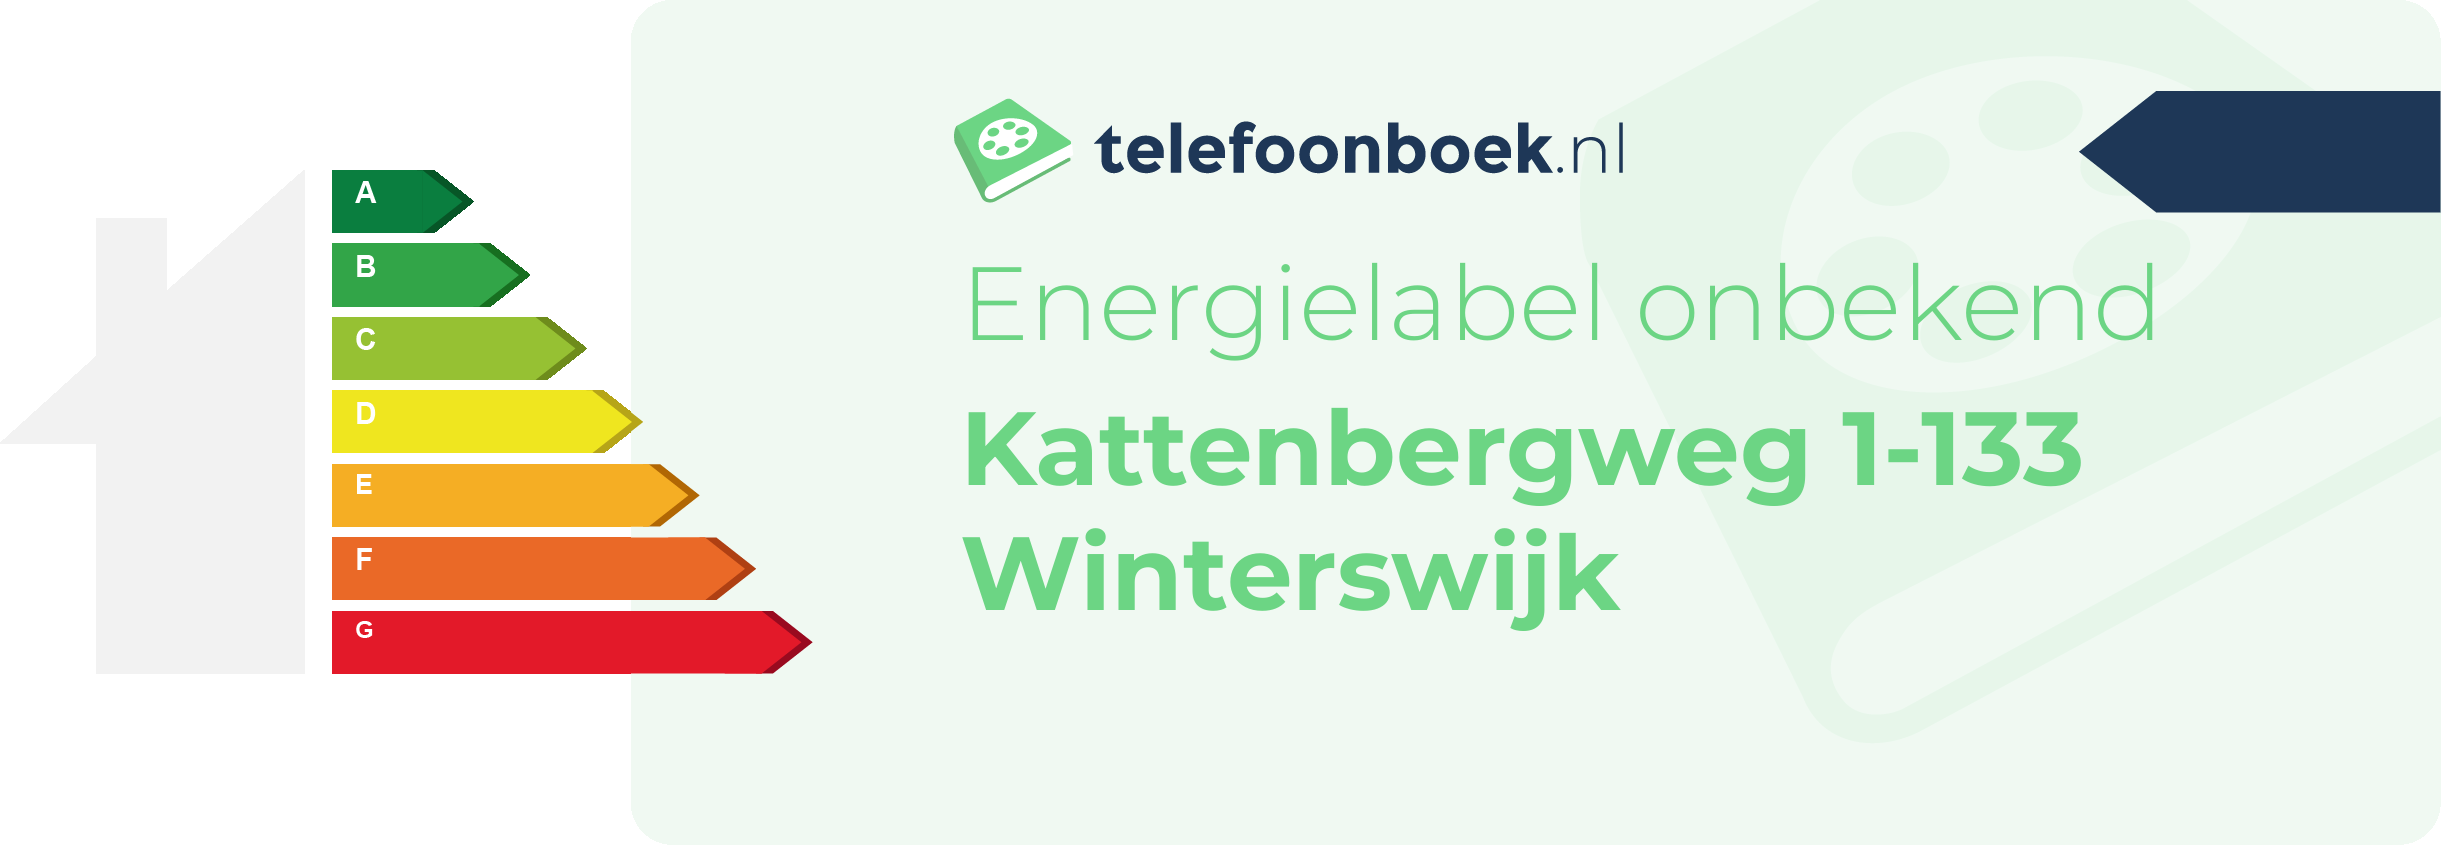 Energielabel Kattenbergweg 1-133 Winterswijk